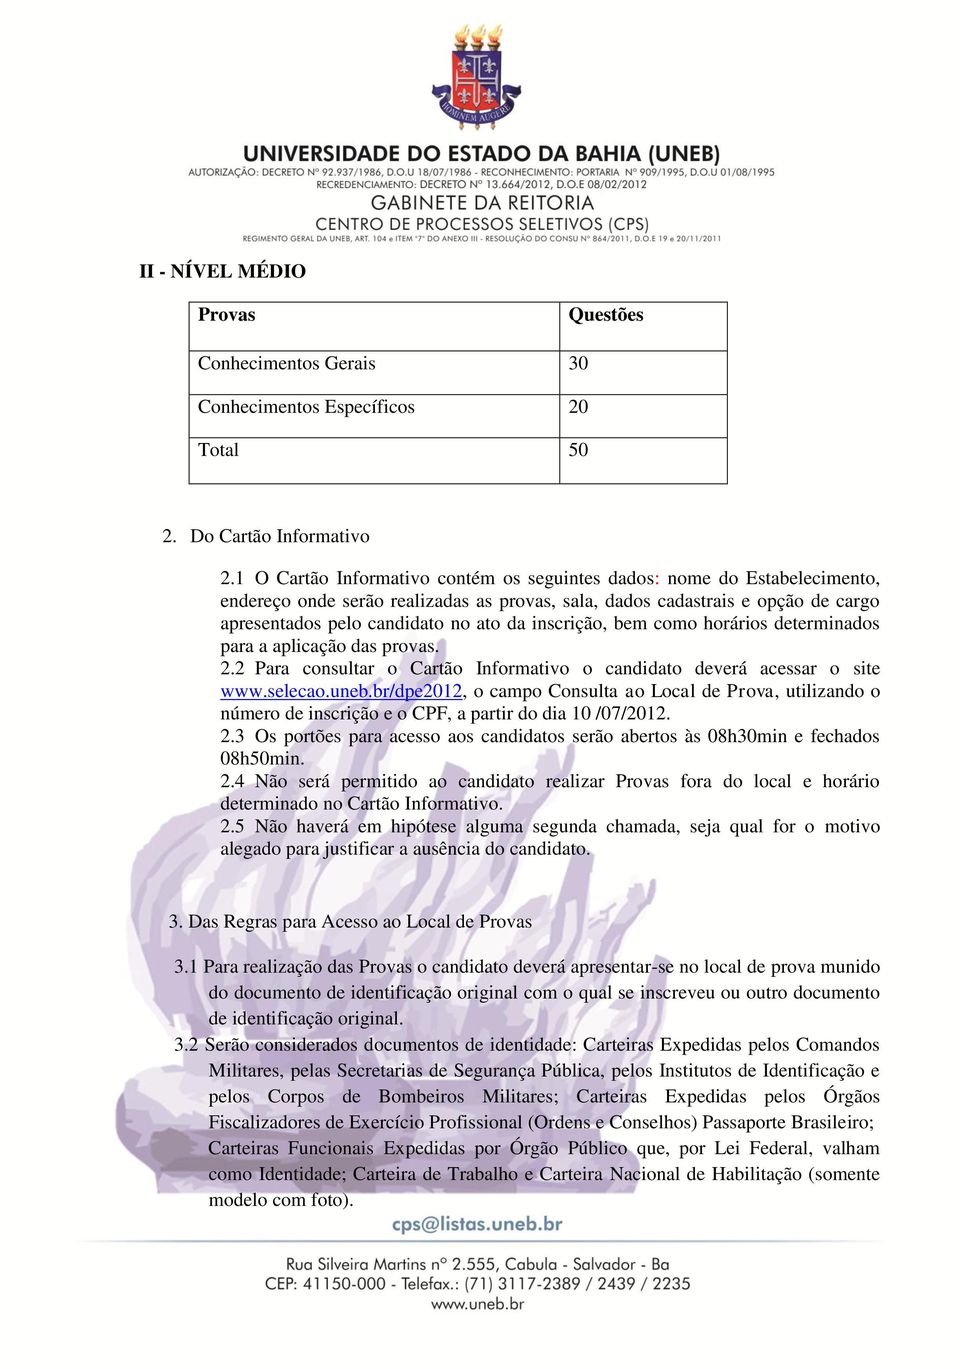 inscrição, bem como horários determinados para a aplicação das provas. 2.2 Para consultar o Cartão Informativo o candidato deverá acessar o site www.selecao.uneb.